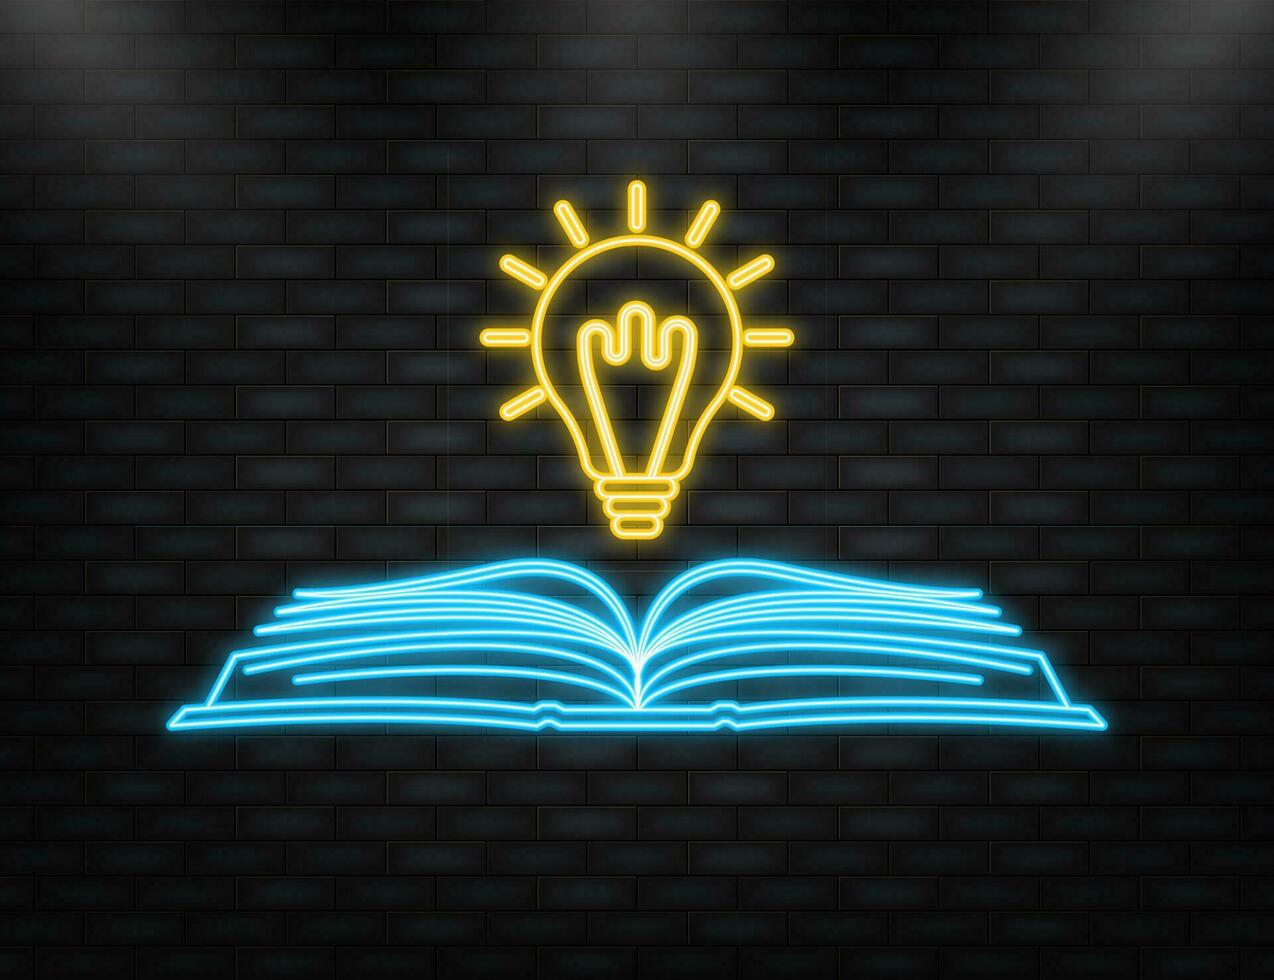 des idées livre sur lumière ampoule. Puissance de connaissance signe. vecteur illustration.